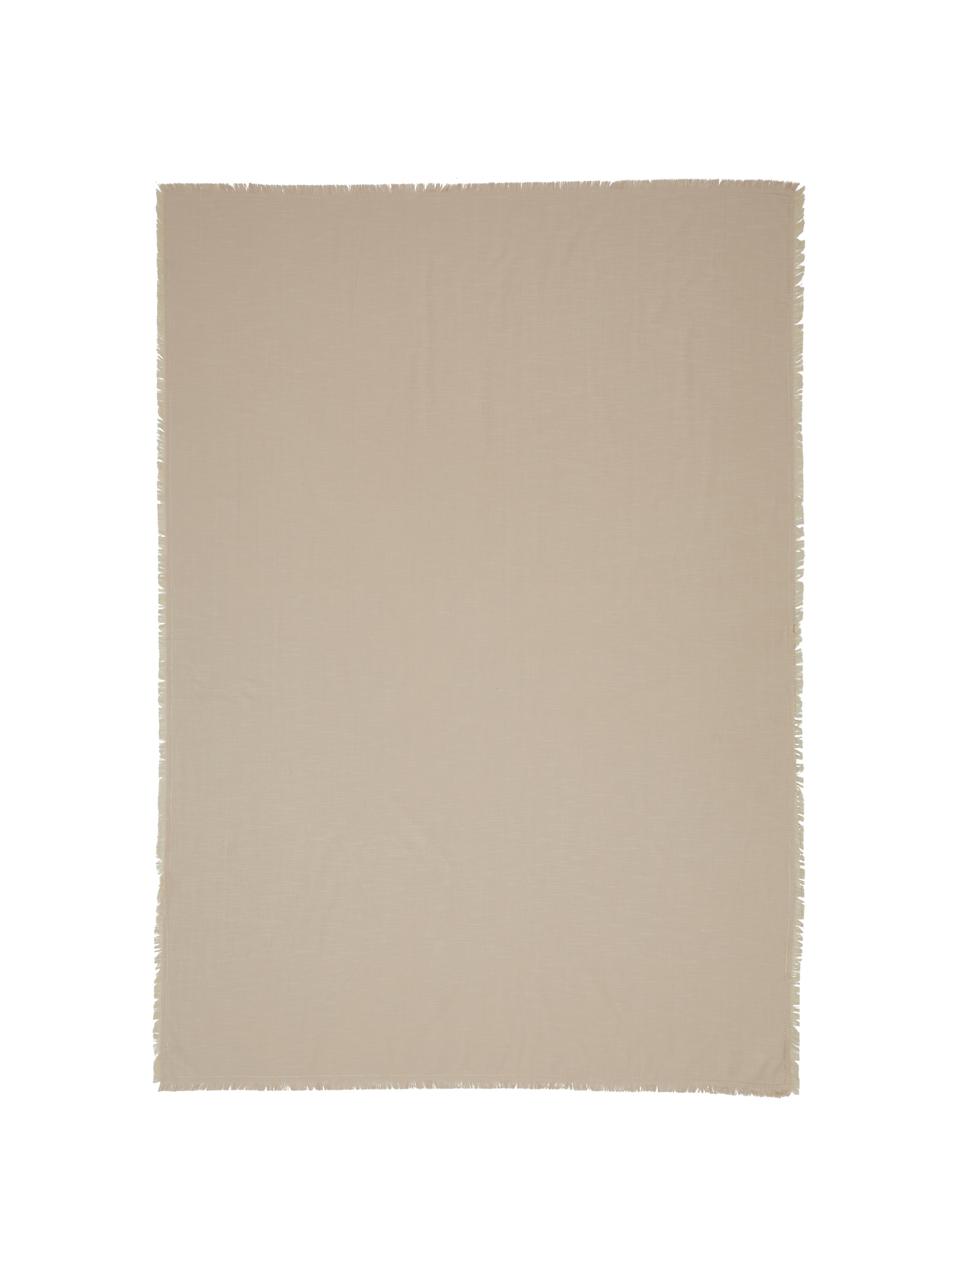 Tovaglia in cotone beige con frange Henley, 100% cotone, Beige, Per 4-6 persone (Larg. 145 x Lung. 200 cm)